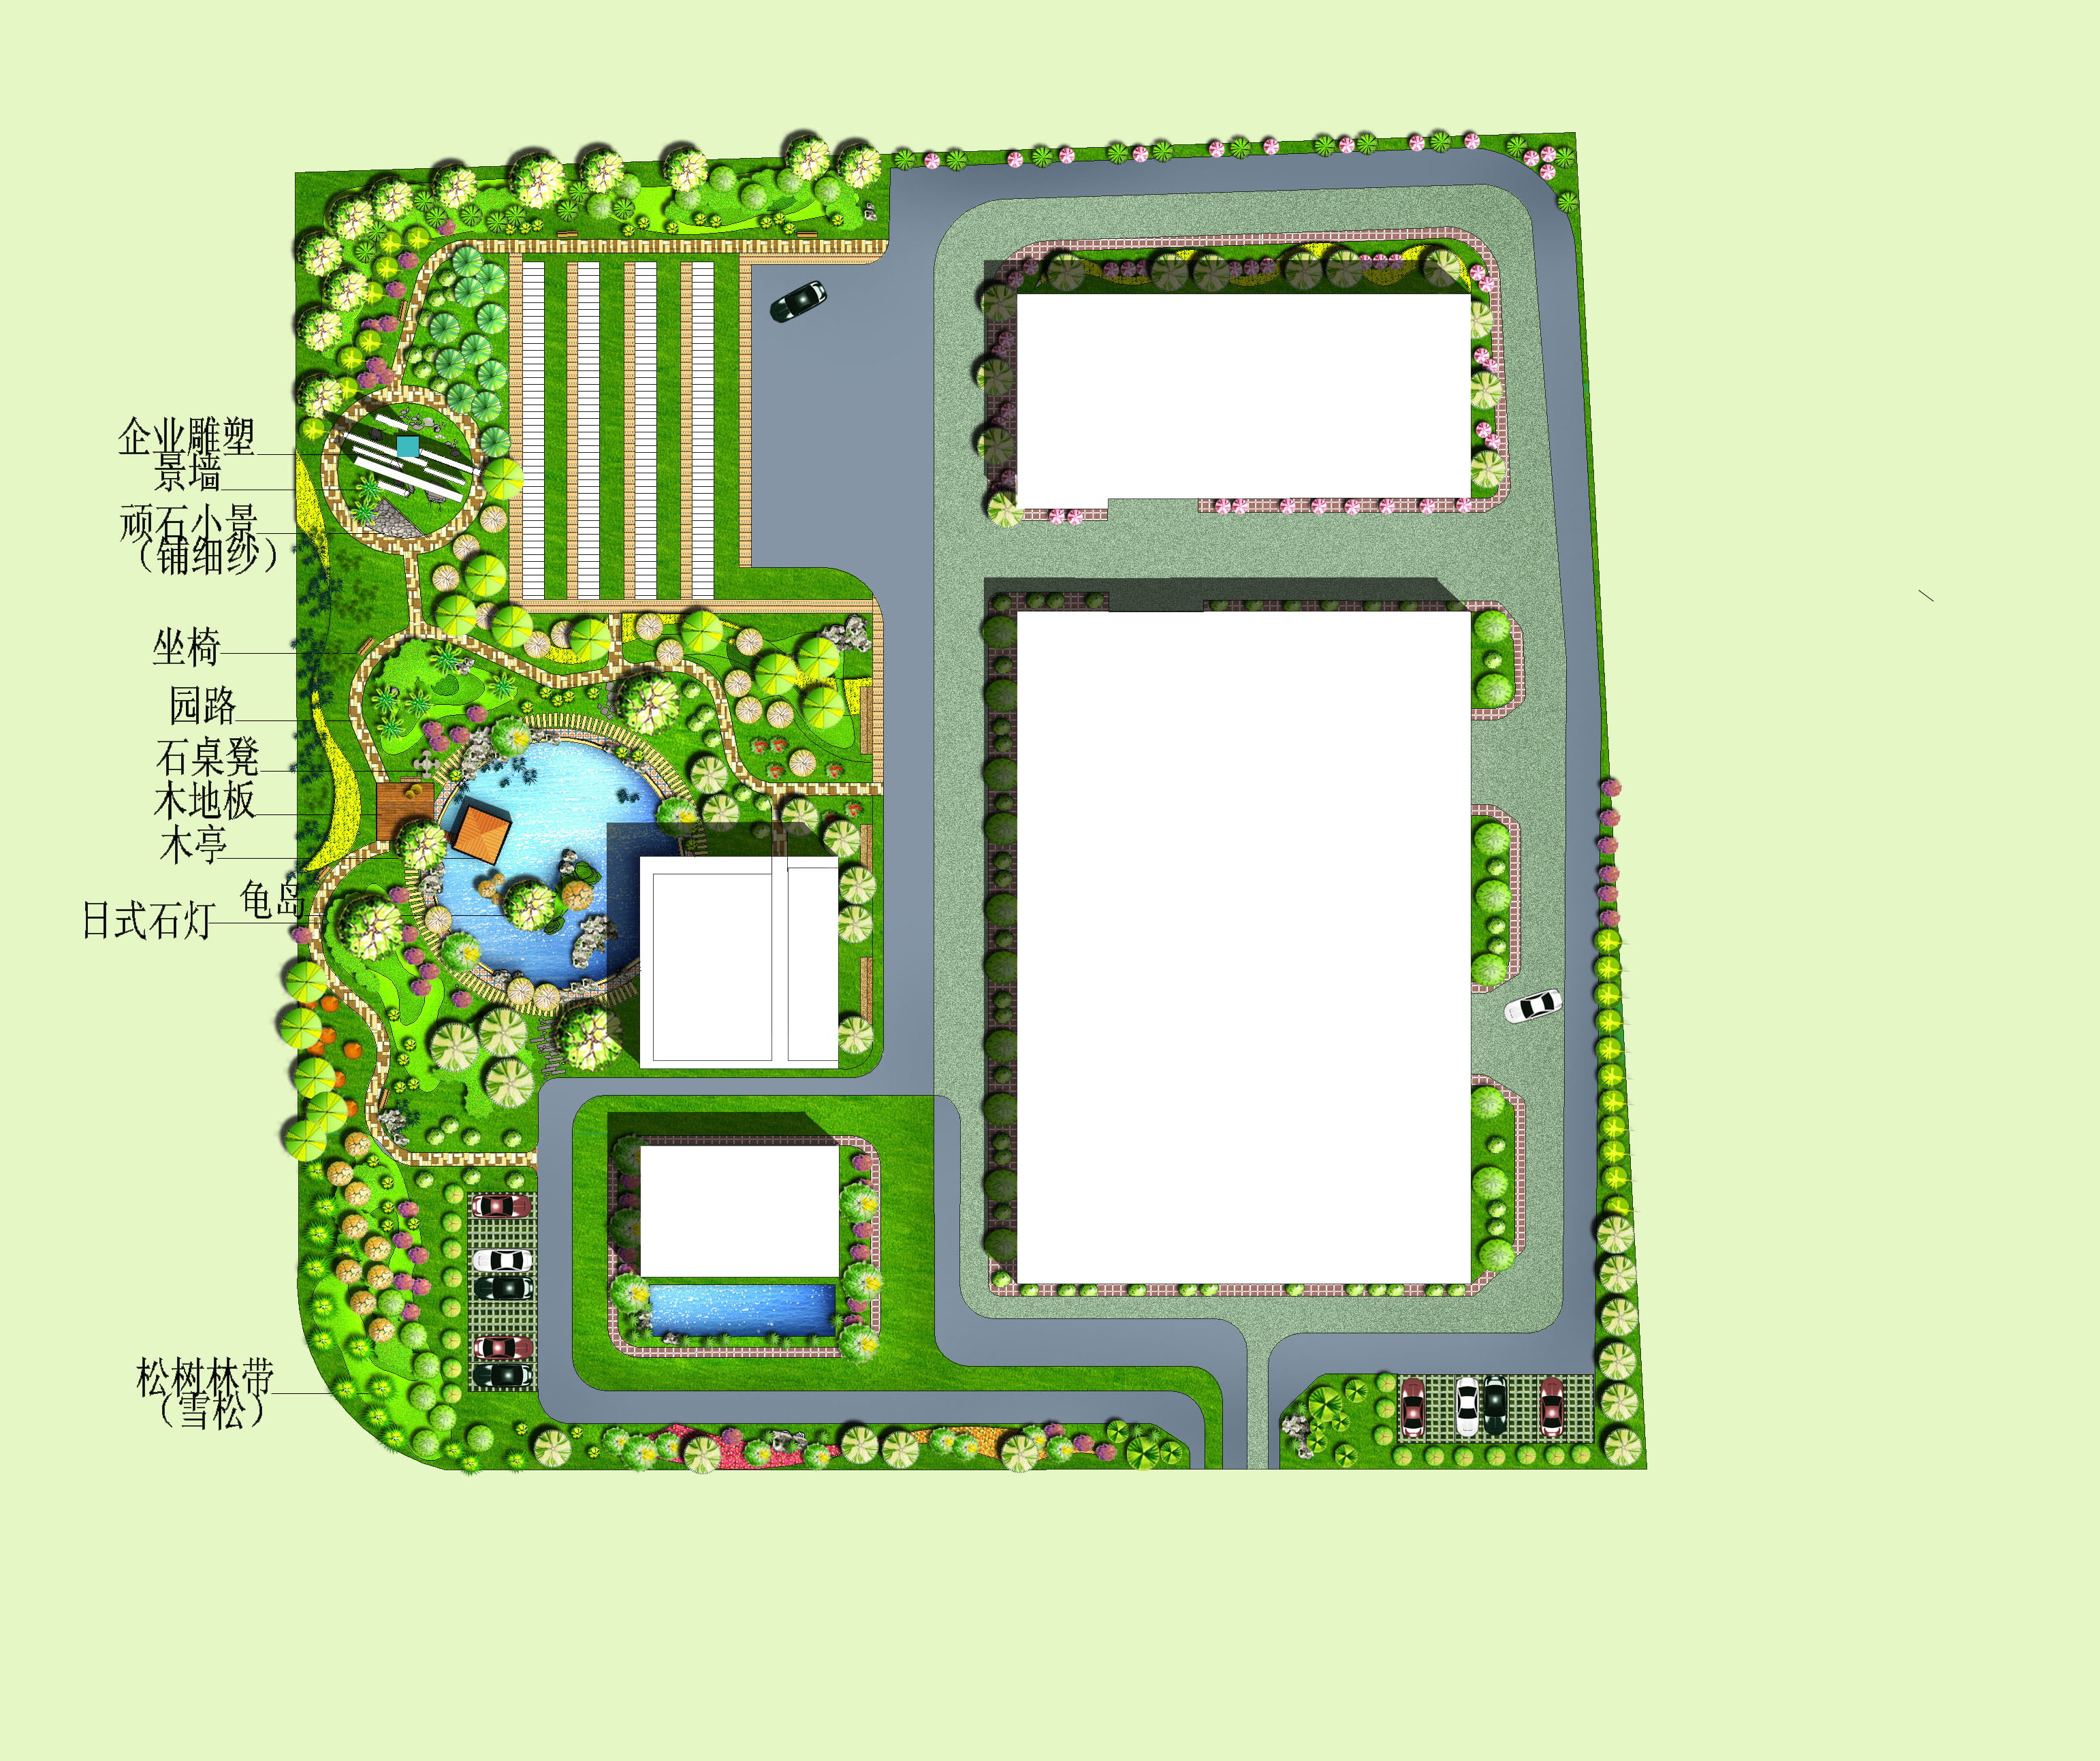 工业园区景观设计,企业厂区景观规划设计案例 - 建科园林景观